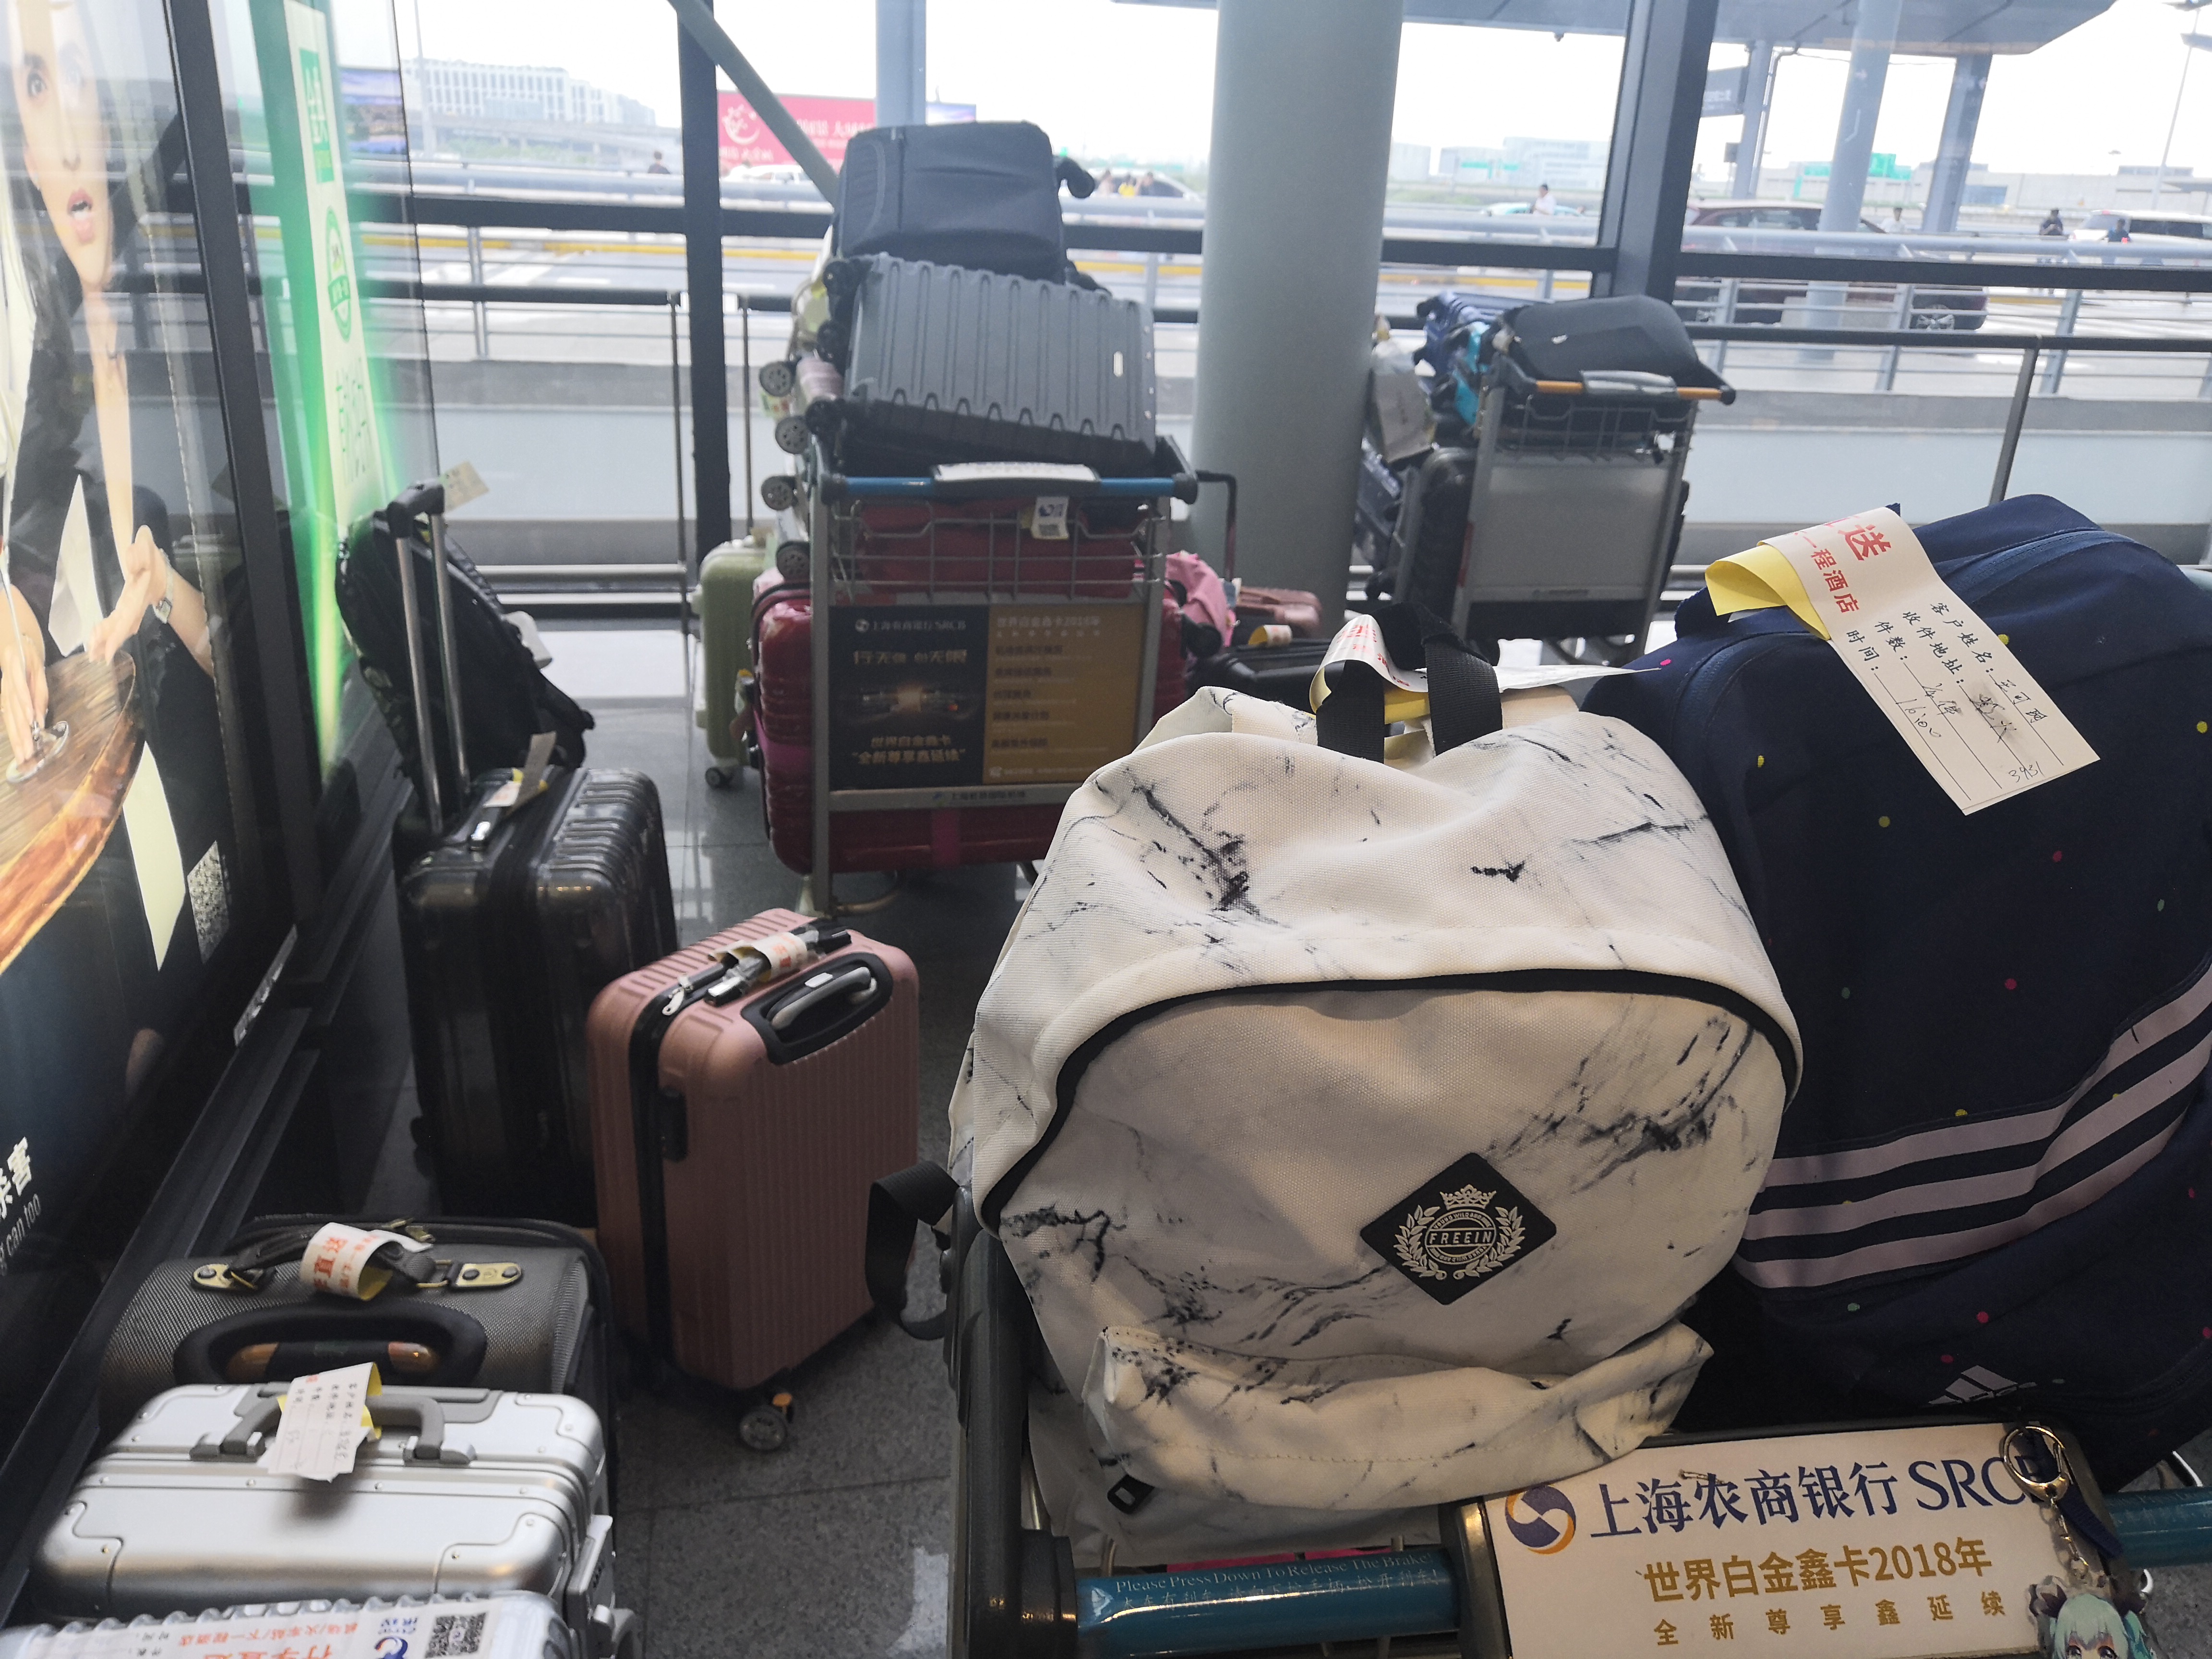 上海虹桥火车站有地方可以寄存行李吗?